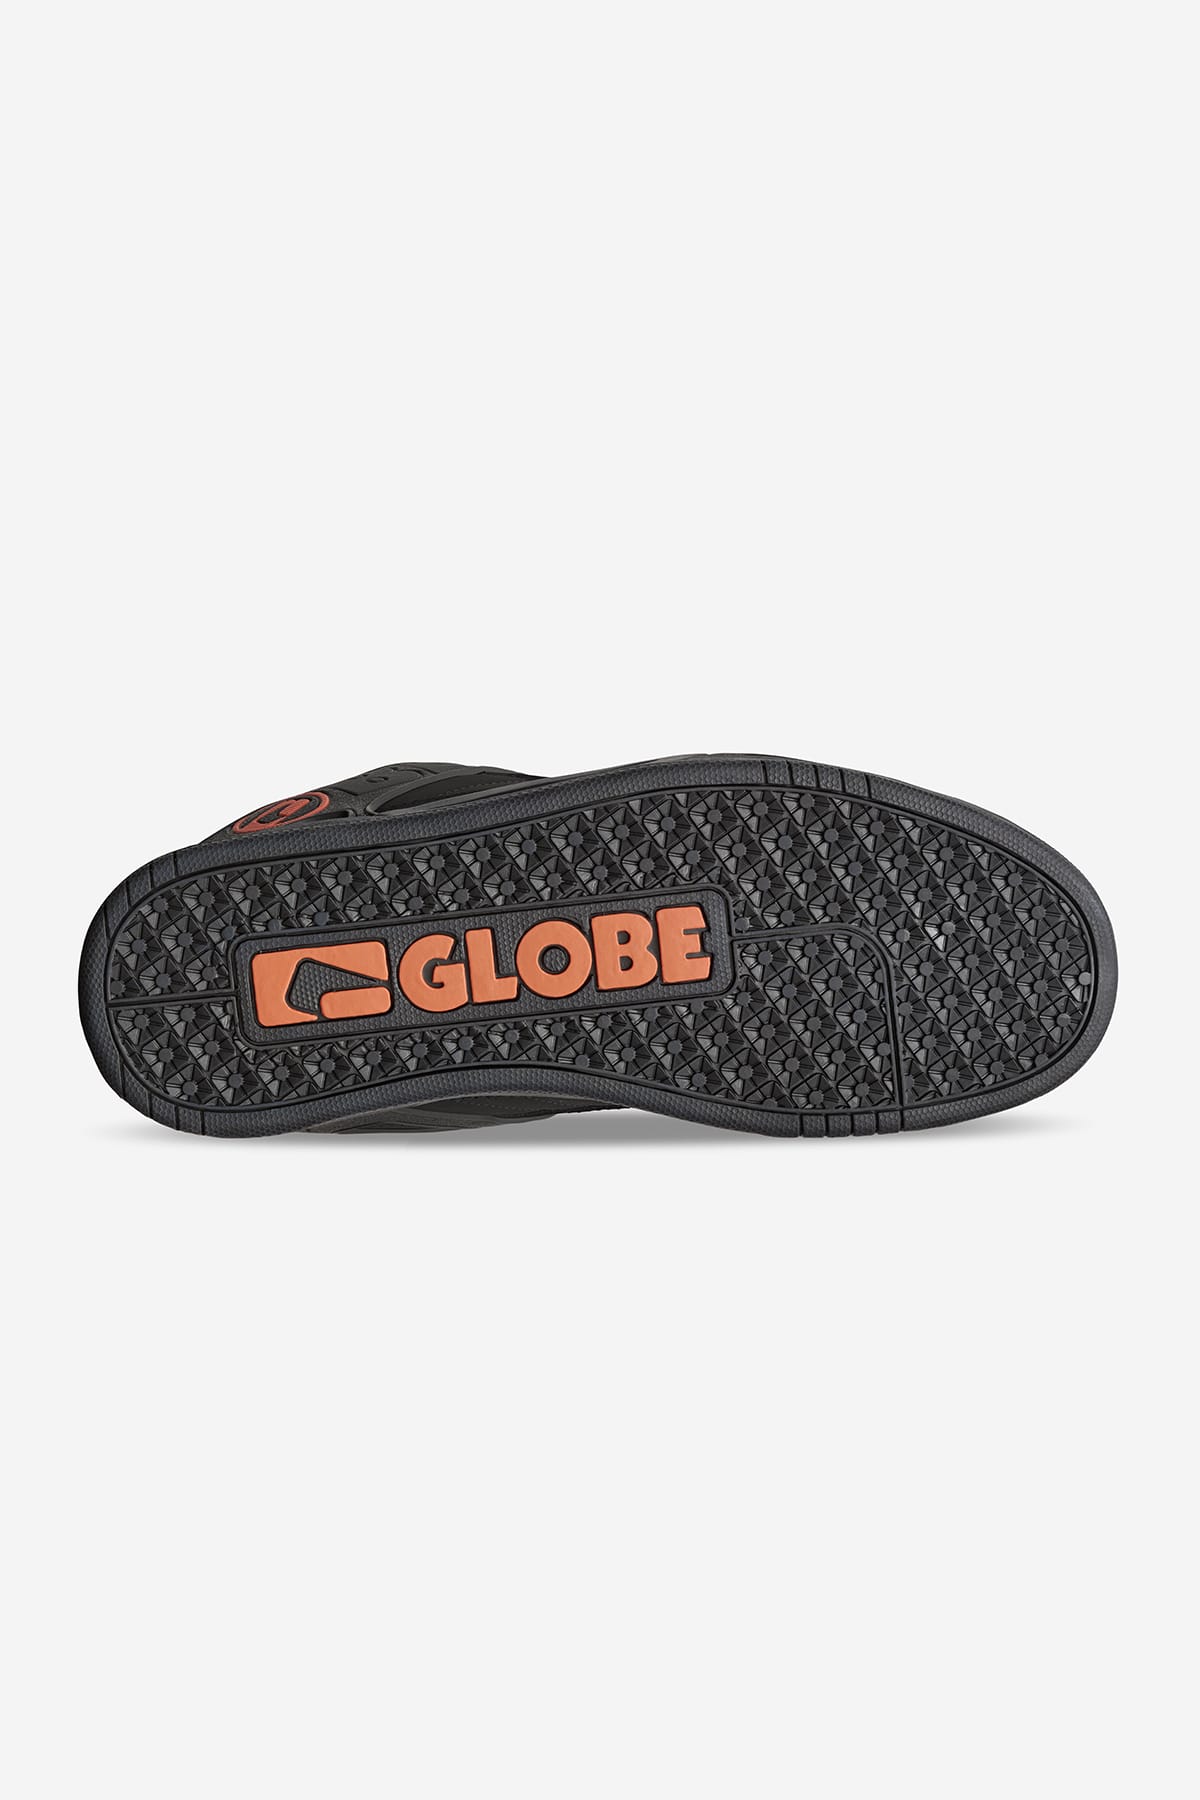 Globe - Tilt - Black/Black/Bronze - skateboard Chaussures